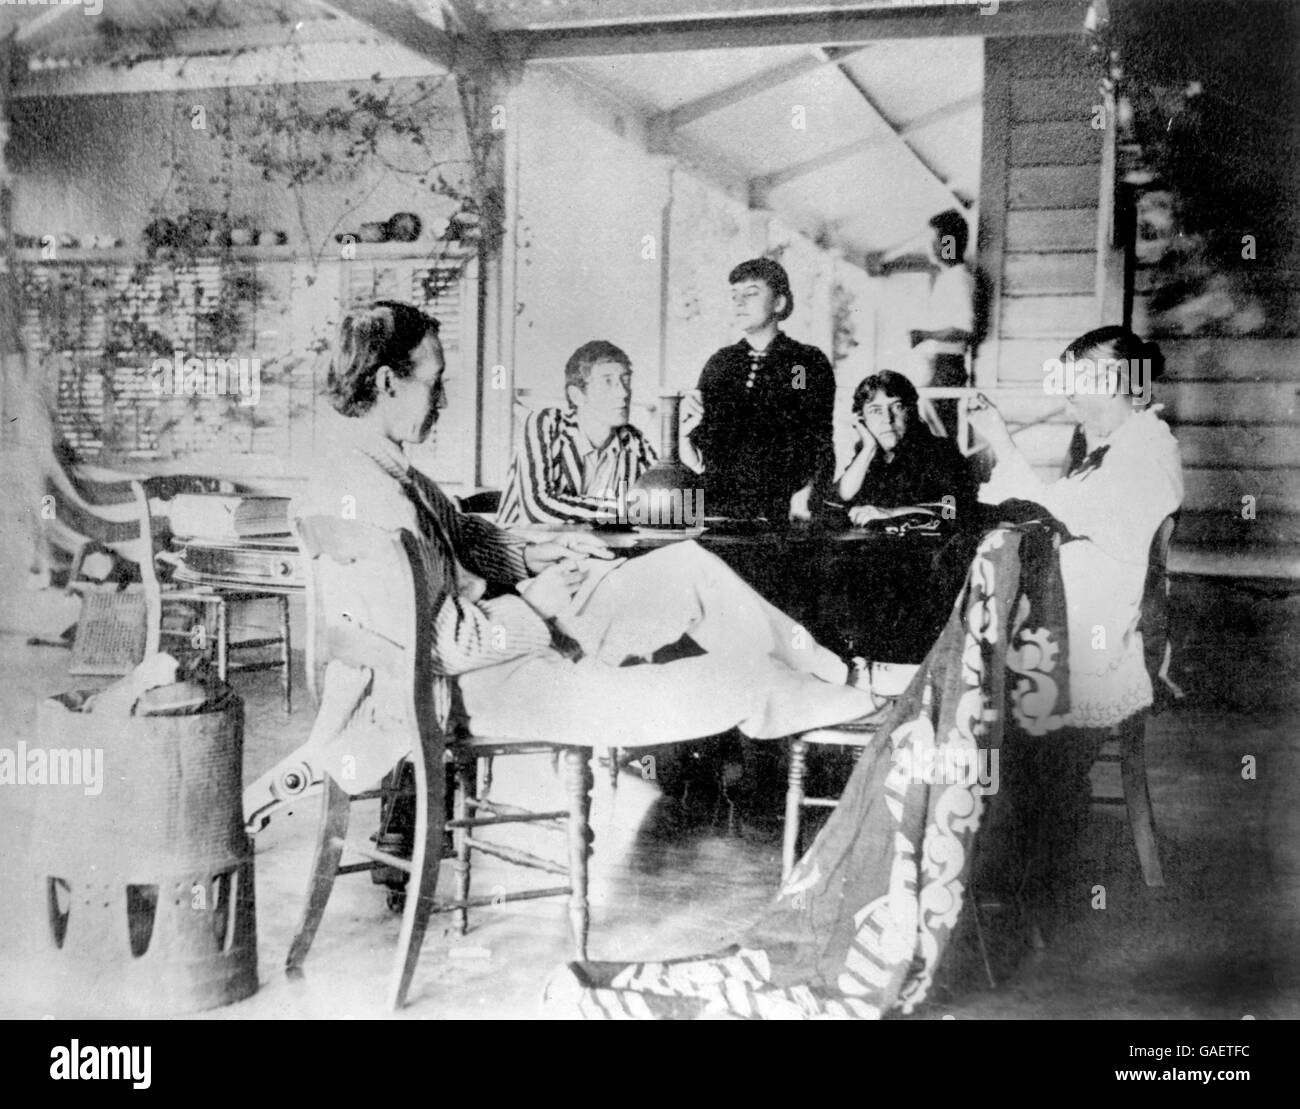 Robert Louis Balfour Stevenson (1850-1894), un écrivain écossais célèbre pour des œuvres telles que l'île au trésor et le Dr Jekyll et Mr Hyde. Cette photo montre lui (assis au premier plan) avec sa famille à sa maison dans les îles hawaïennes, probablement c.1889. Banque D'Images